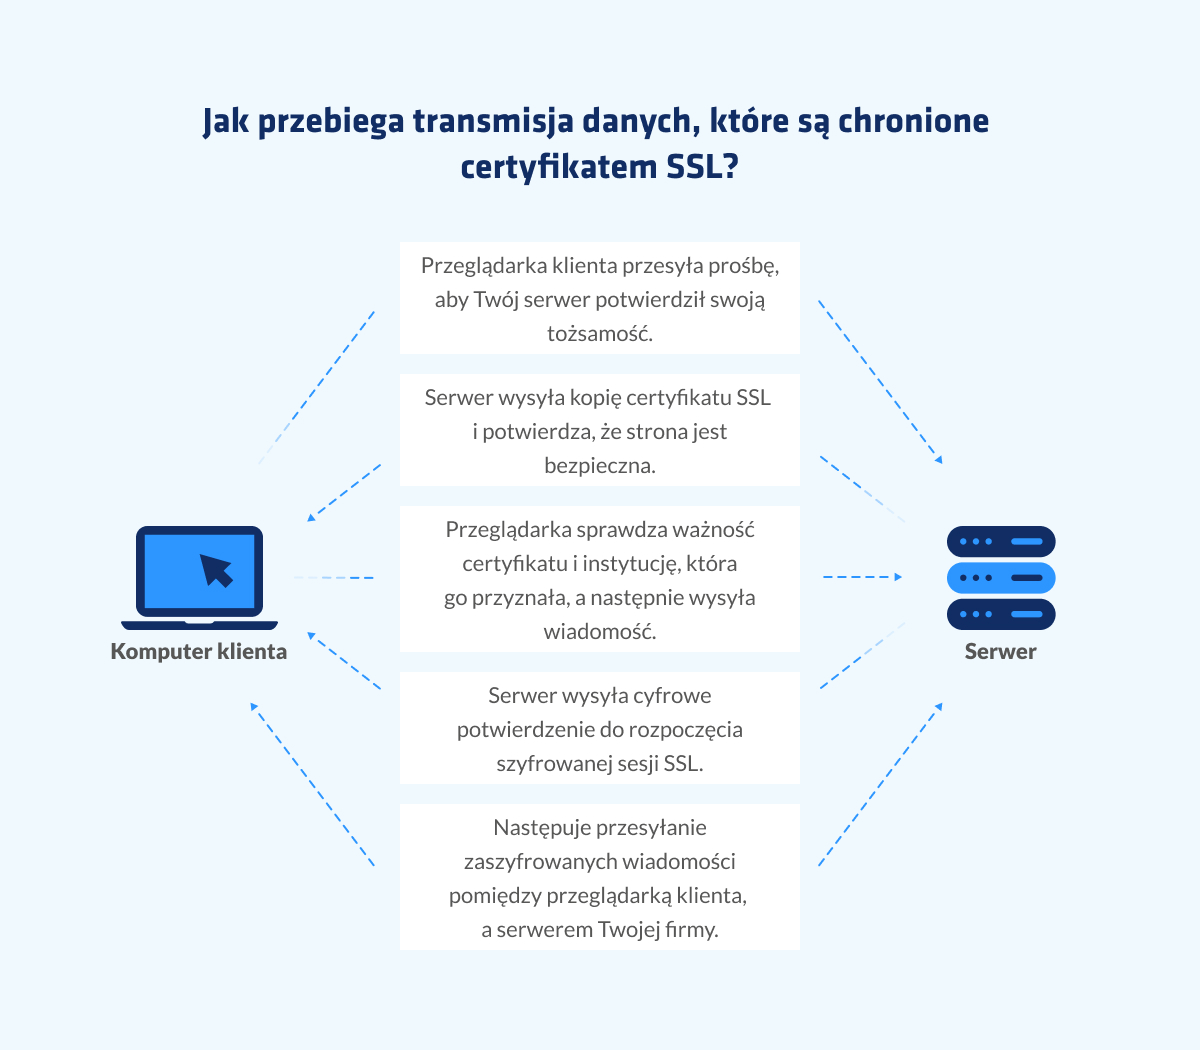 Warto też wspomnieć o tym, że niektóre certyfikaty SSL są pewnego rodzaju zabezpieczeniem, które dają Ci gwarancję finansową. Jej wysokość zależy od wariantu wybranego certyfikatu. Dzięki takiej dodatkowej ochronie można także weryfikować tożsamość serwerów lub klientów i dbać o to, aby dane trafiły do właściwego odbiorcy. Twoja strona zyskuje dzięki niemu większą wiarygodność.  Certyfikat SSL gwarantuje integralność i poufność danych. Nawet jeżeli haker przejmie stronę, nie odczyta informacji, które są zabezpieczone certyfikatem. Dzięki niemu nie wykradnie np. danych osobowych Twoich klientów, numerów kont i kart kredytowych. Można tez przypuszczać, że klienci chętniej podadzą w formularzu np. swój adres e-mail albo telefon, co pozwoli Ci budować bazę kontaktów, ponieważ będą mieć pewność, że ich dane są odpowiednio chronione.